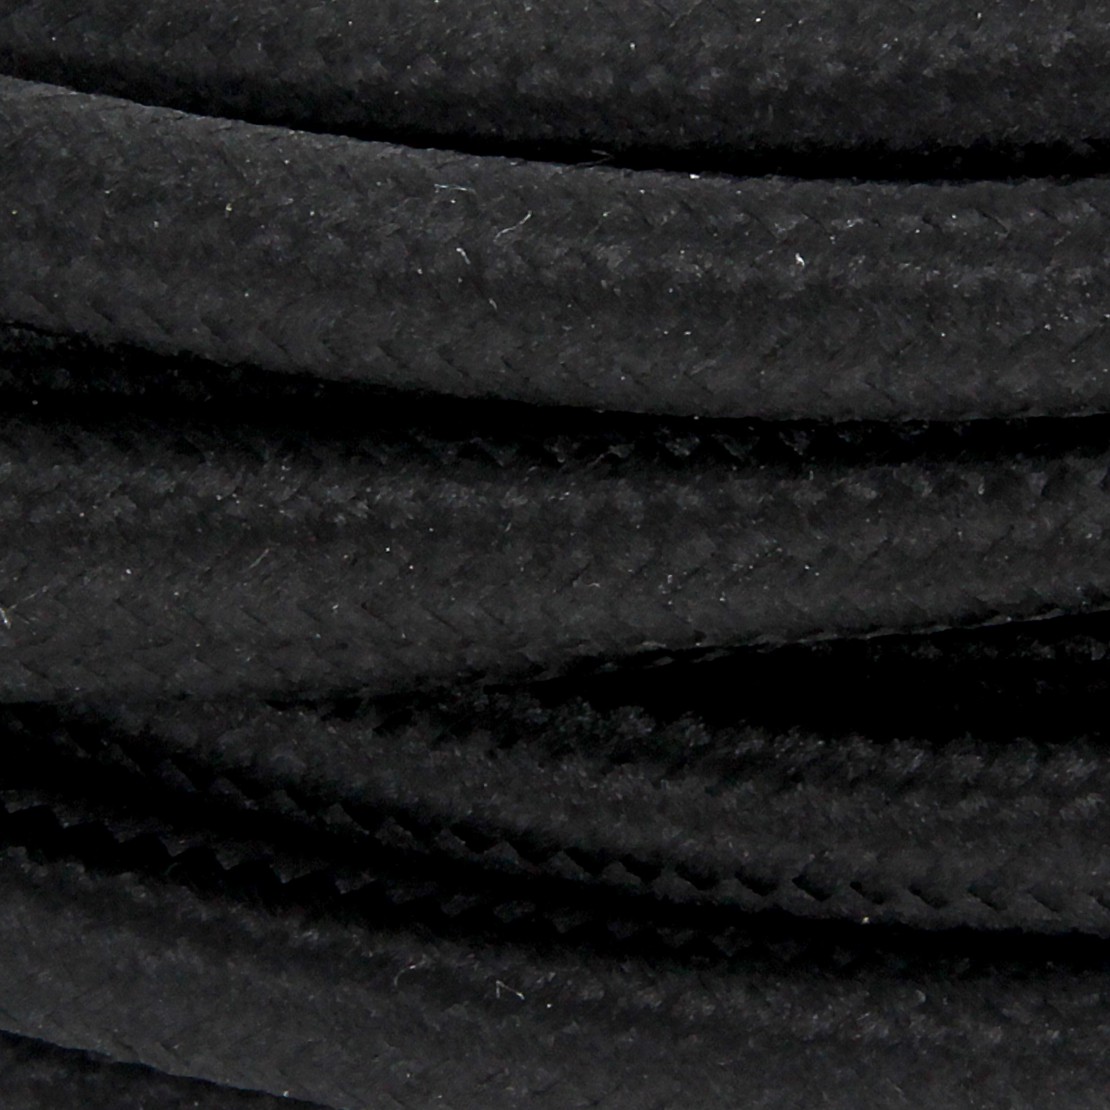 Kabel HO3VV-F  2 x 0,75mm2- 5m - zwart